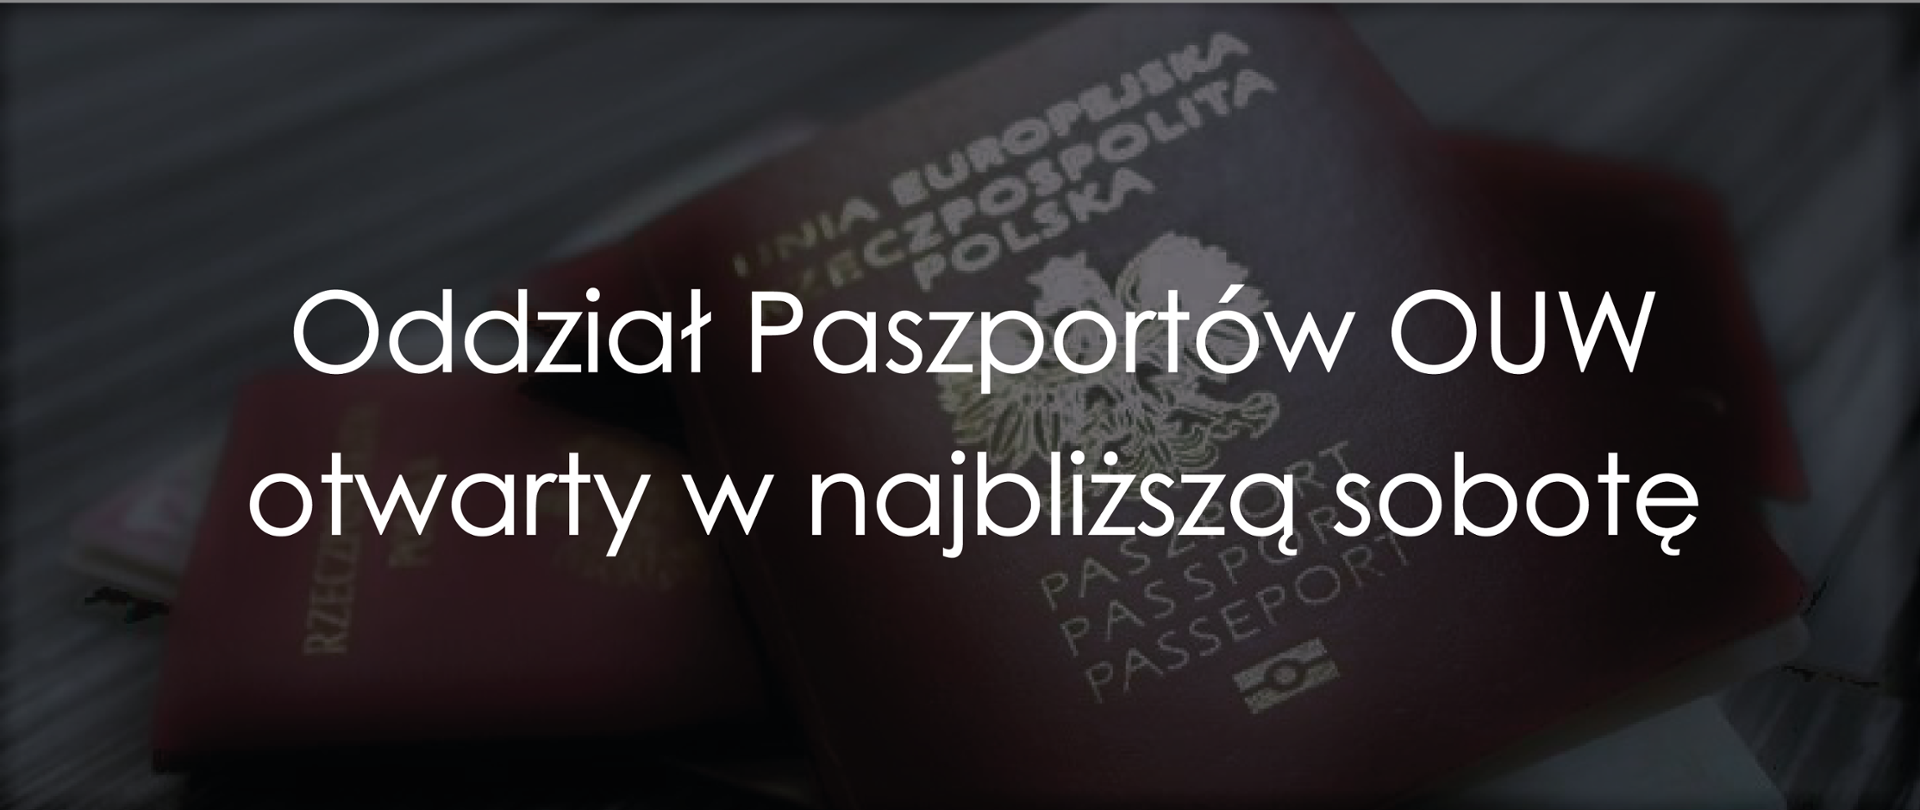 Informacja w sprawie oddziału paszportowego